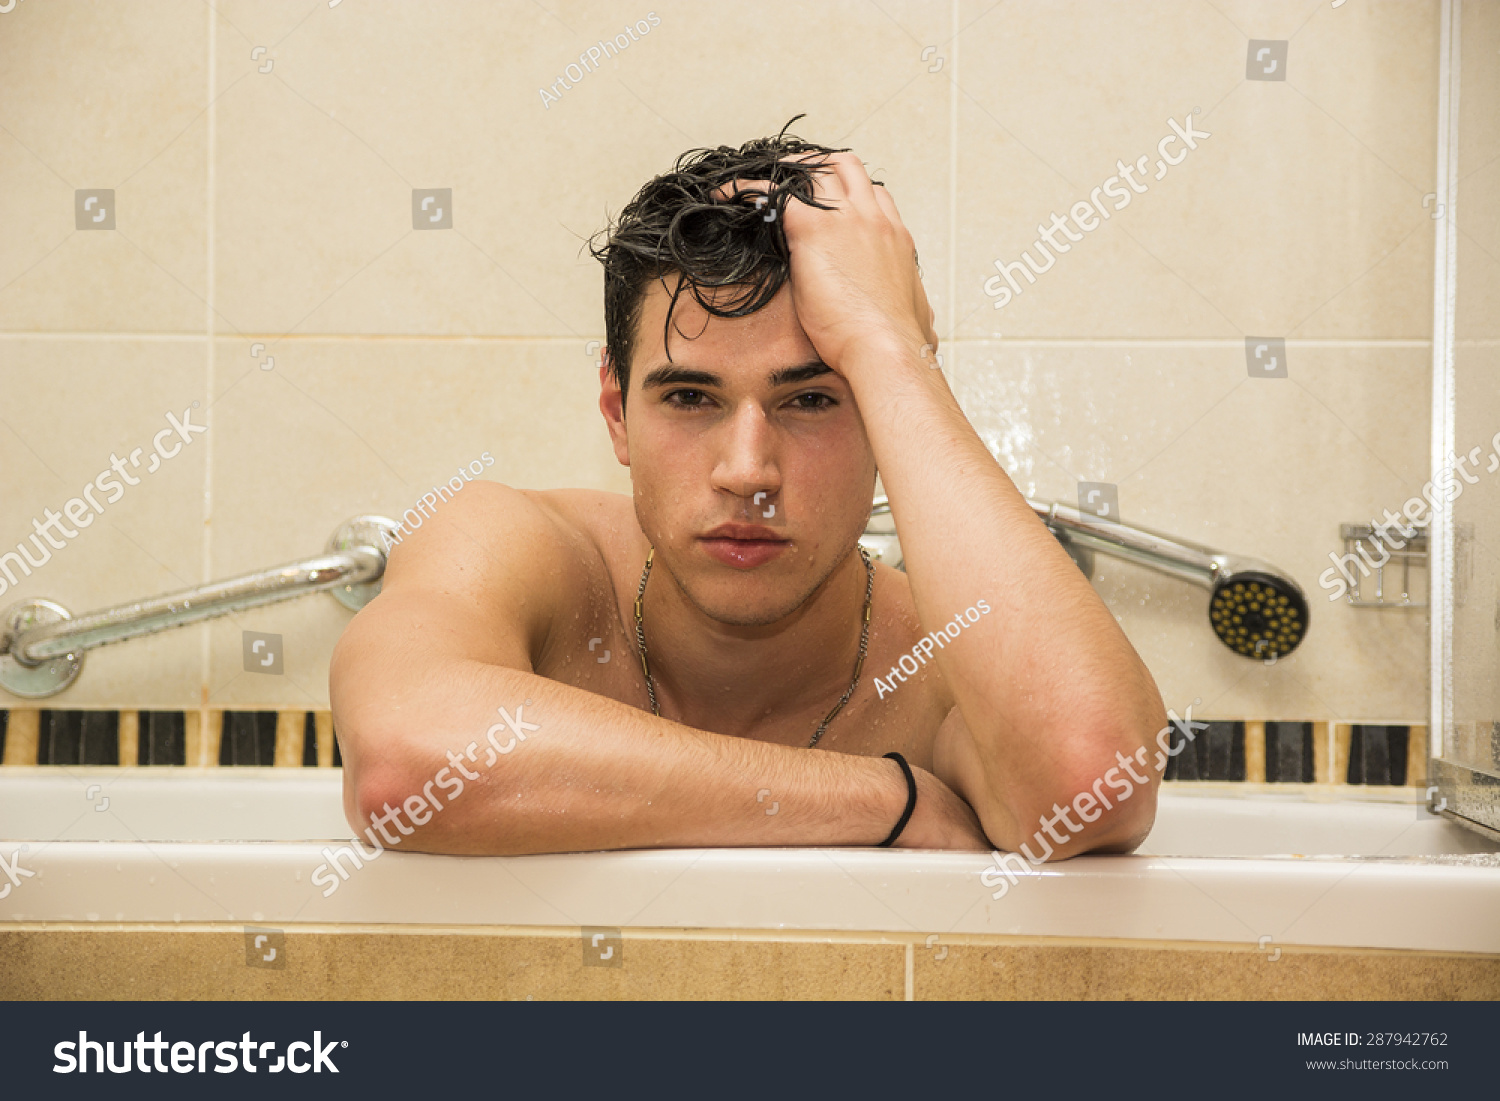 Men Having Sex In The Bathtub 84